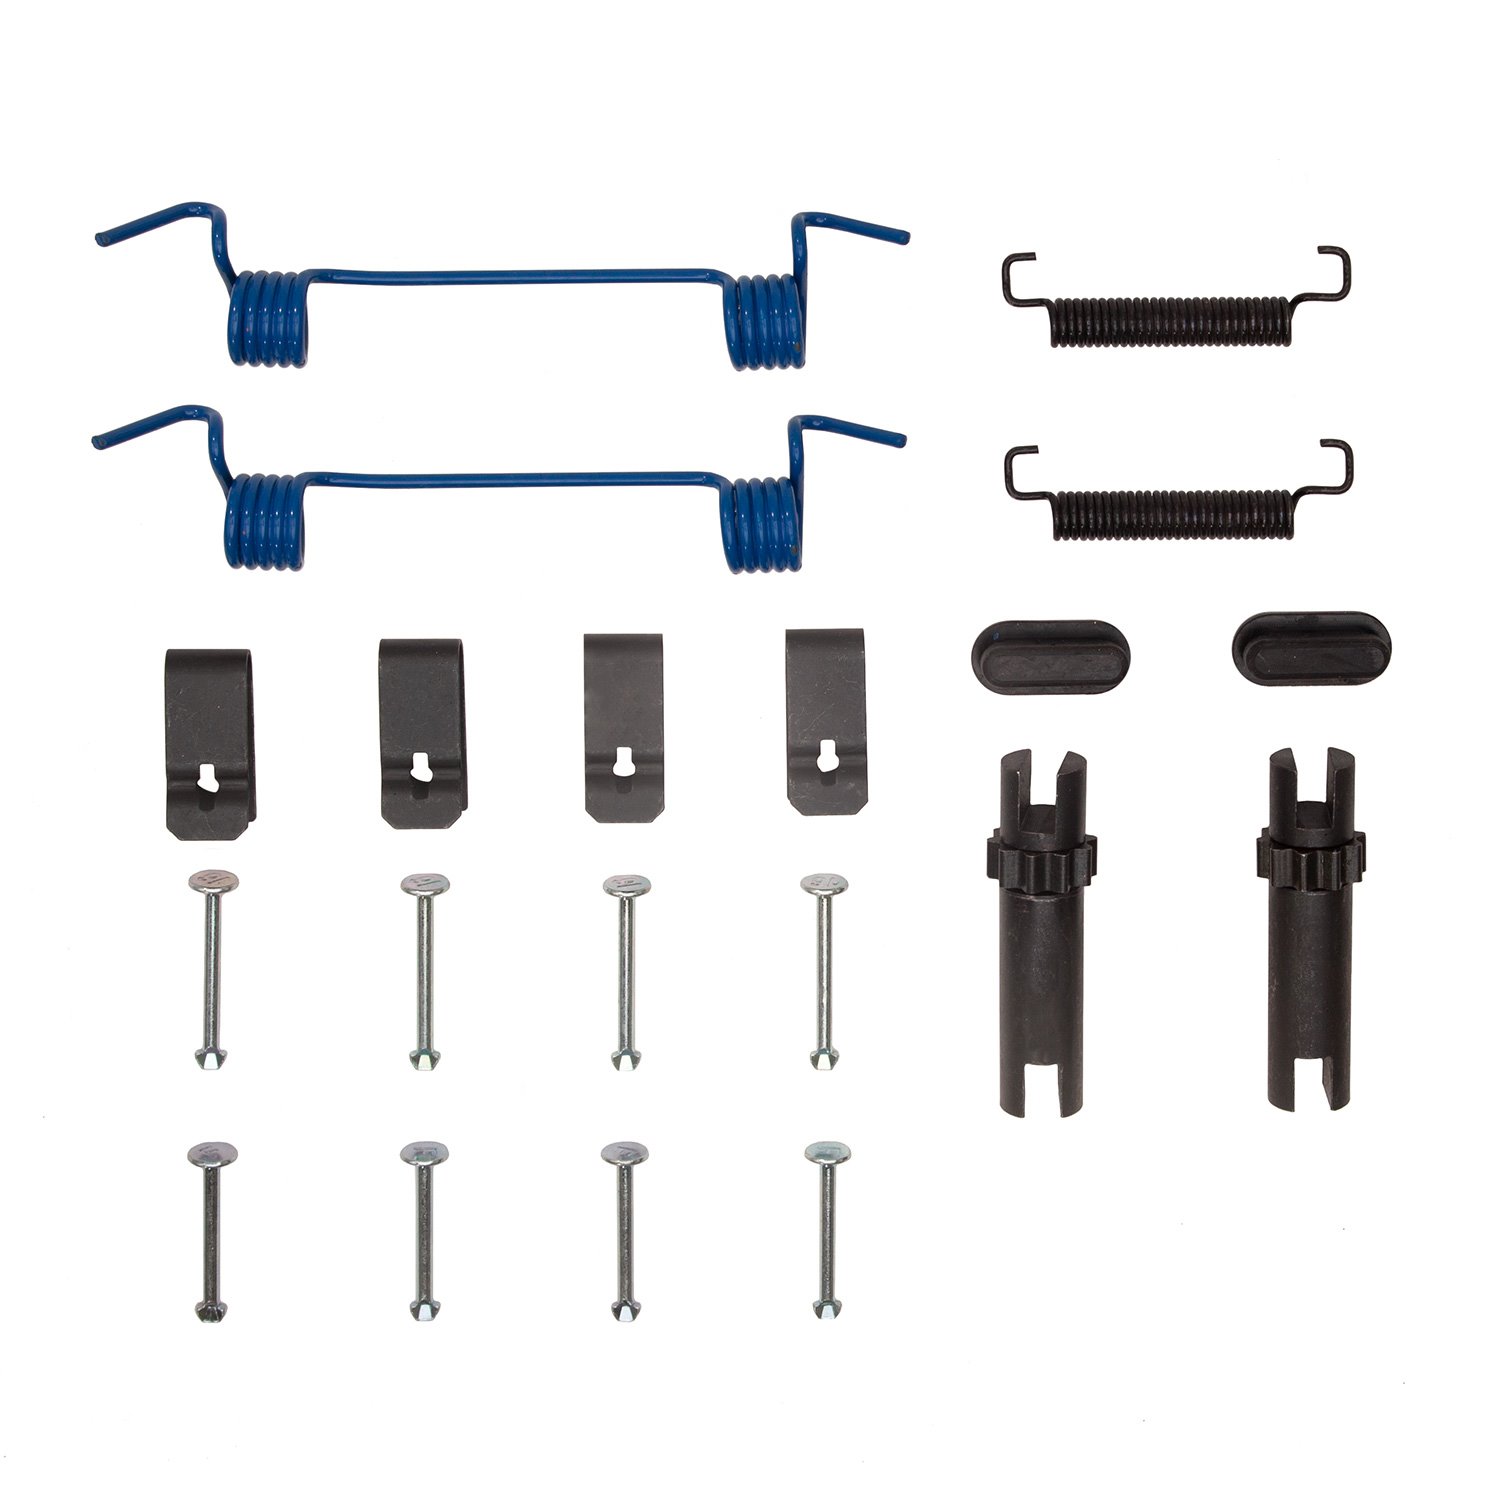 370-48001 Drum Brake Hardware Kit, Fits Select Multiple Makes/Models, Position: Parking,